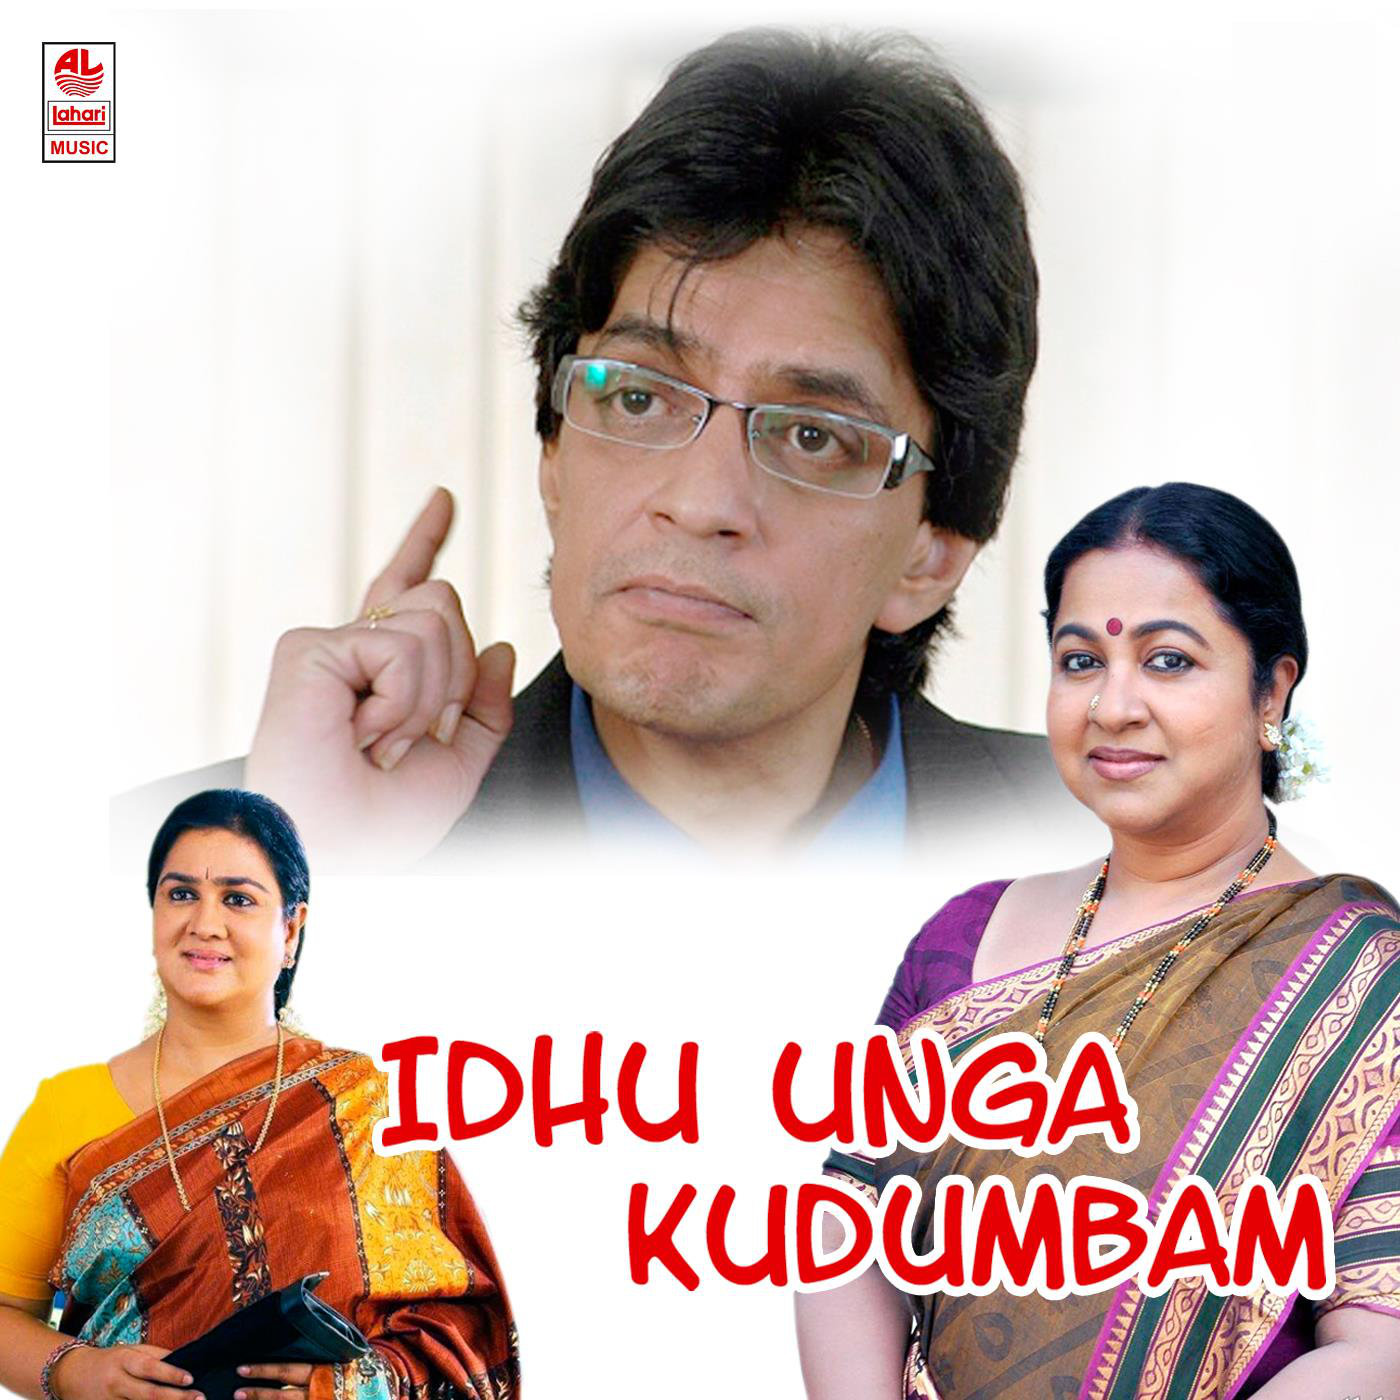 Idhu Unga Kudumbam Original Motion Picture Soundtrack - EP 